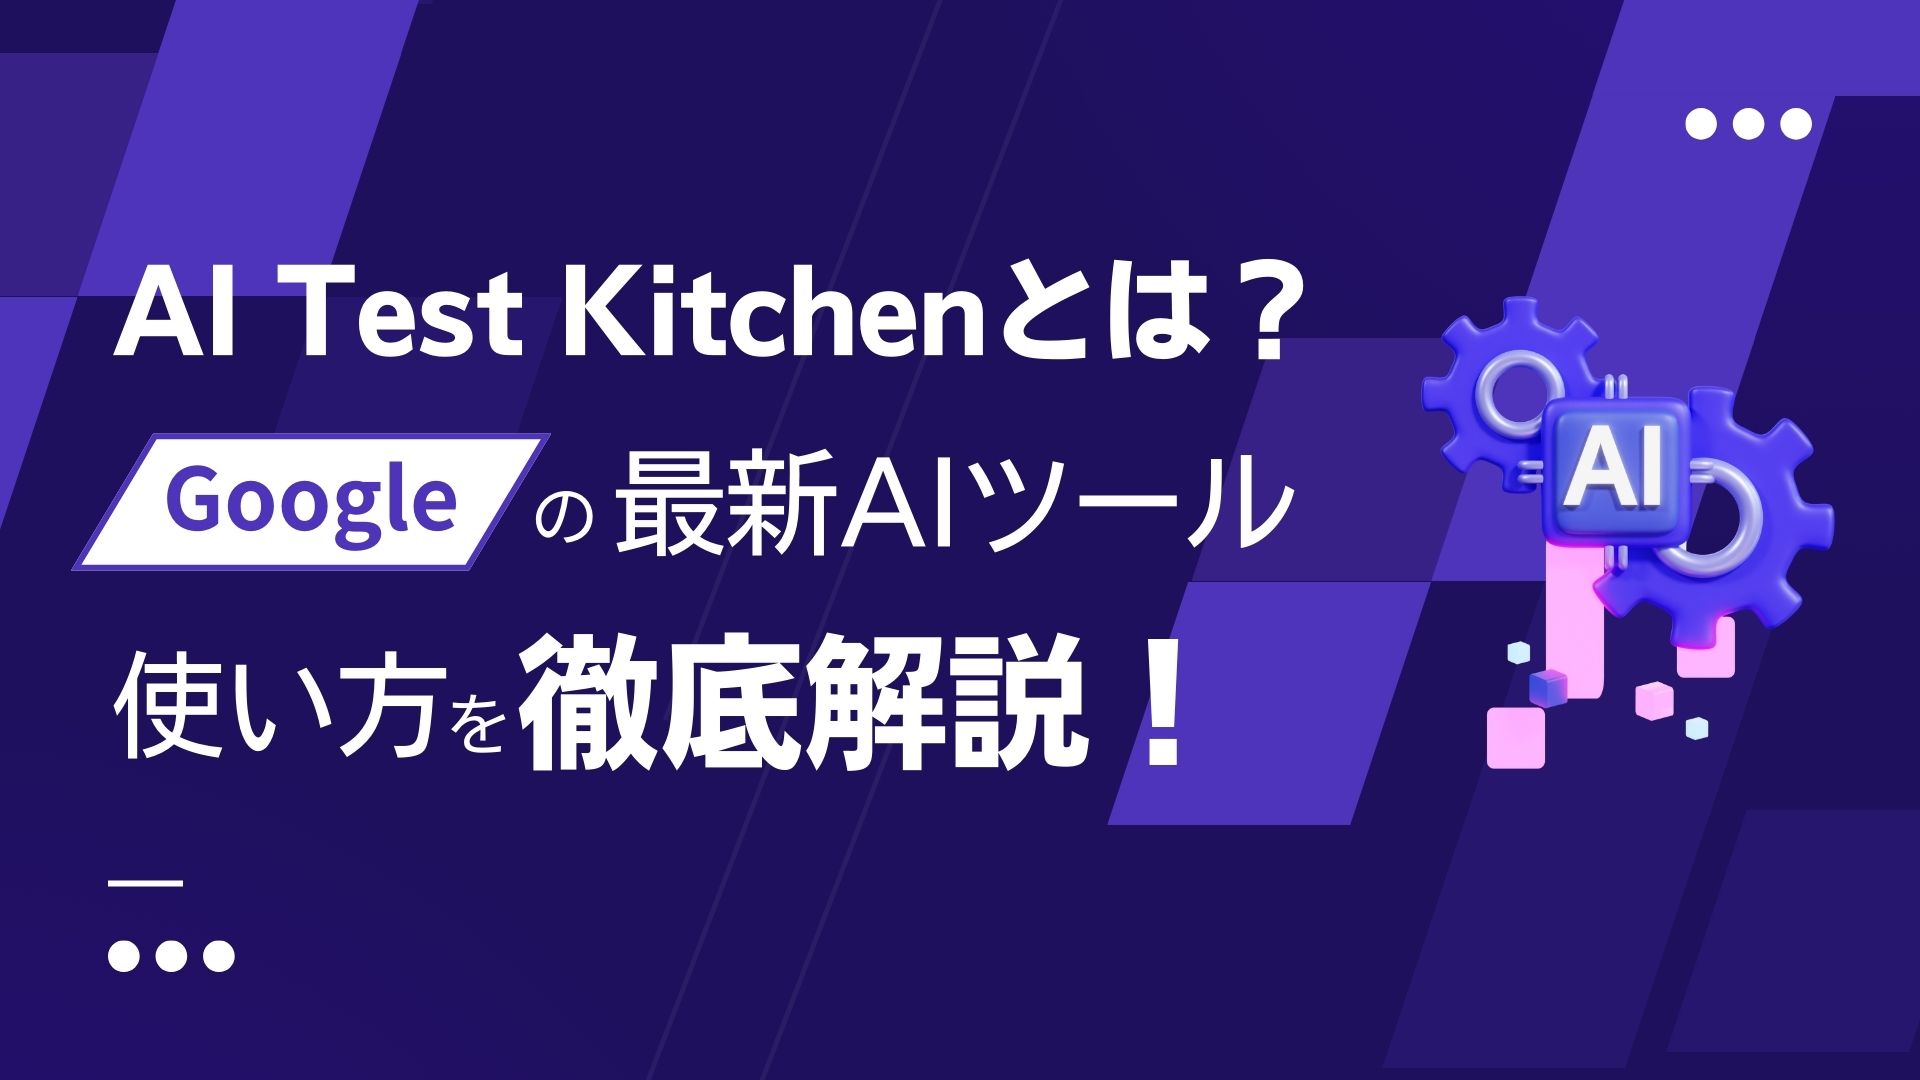 AI-Test-Kitchen Google AIツール 使い方